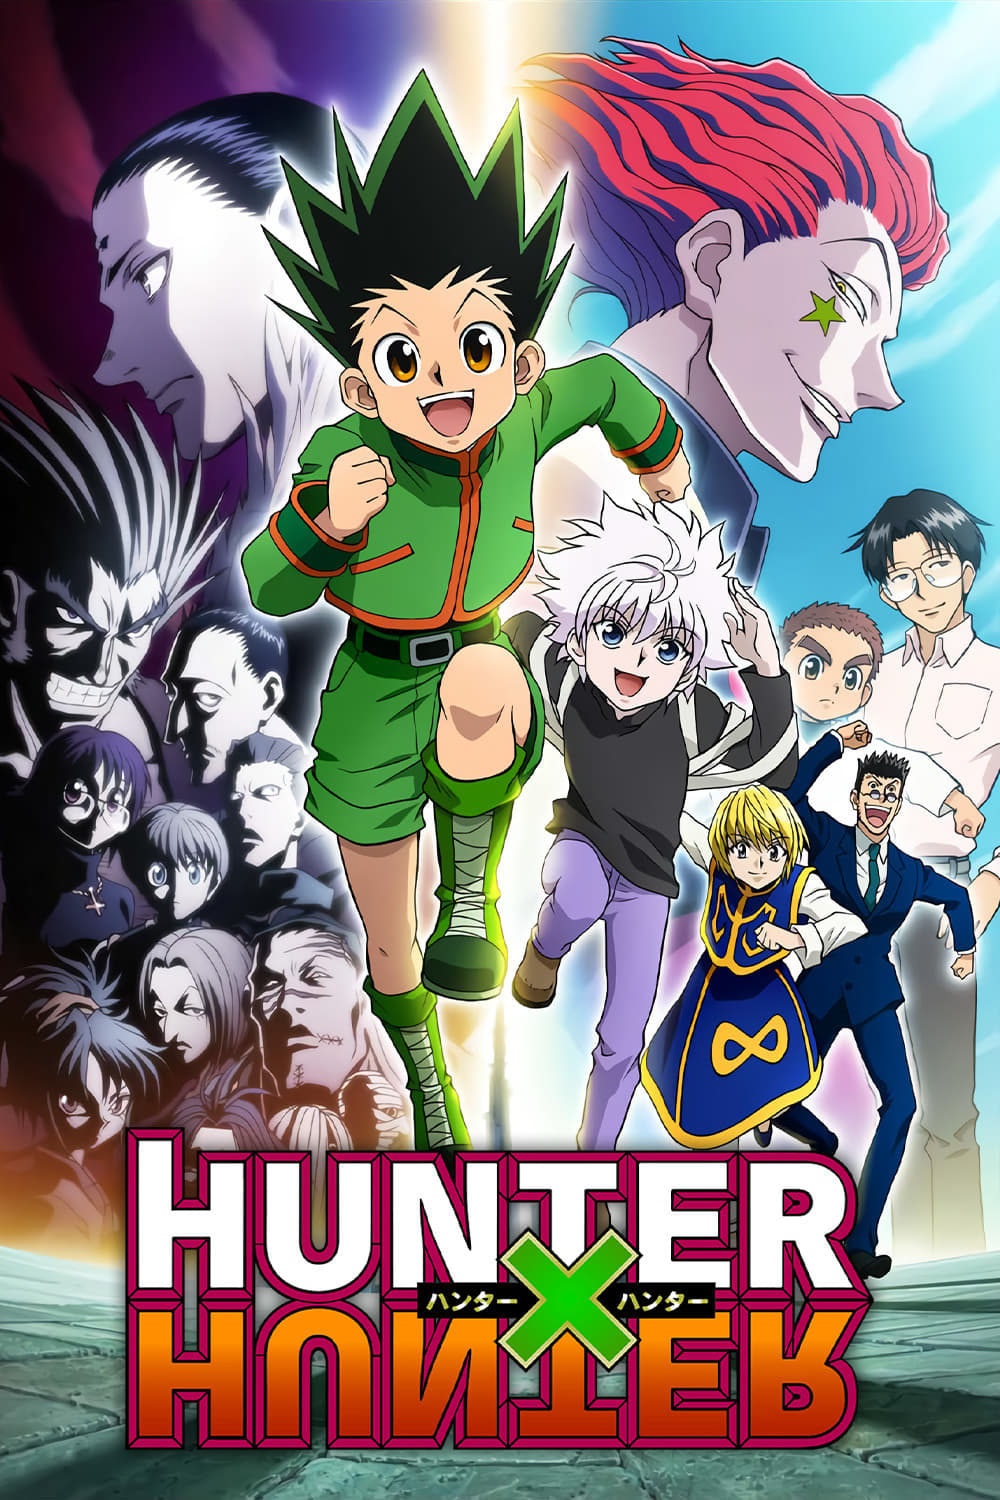 Hunter x Hunter (2011): dublagem está disponível na Netflix EUA e